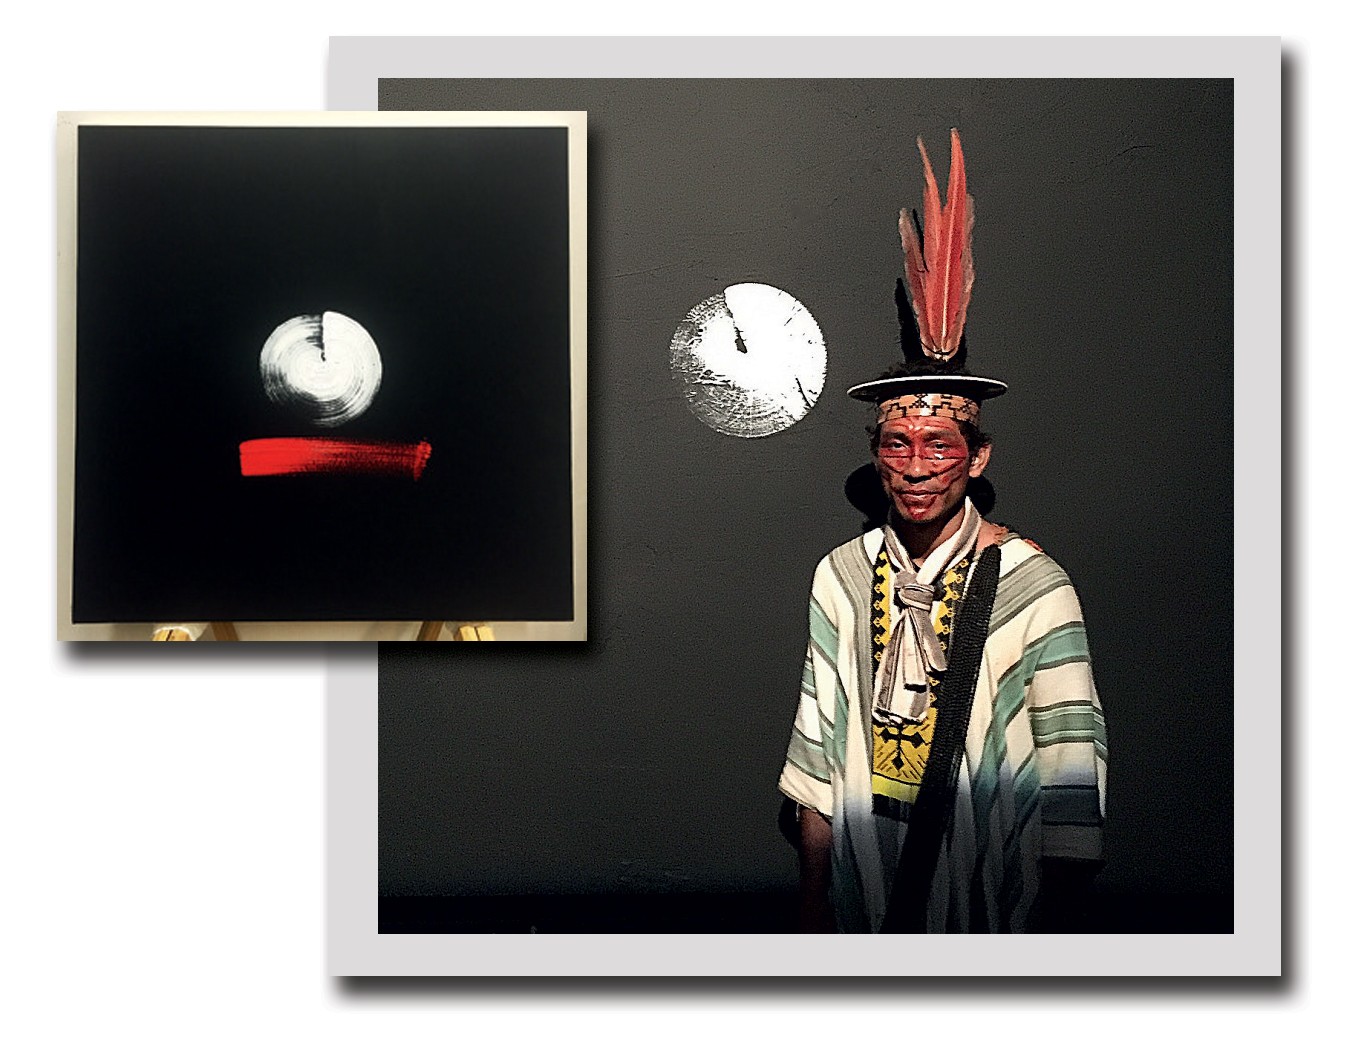 Veia artística Após debutar na Miami Art Basel, em 2011, com uma série de fotografias de Ipanema, Oskar levou à ArtRio, em setembro, uma instalação que unia projeções, fotos e sua primeira pintura (acima), inspirada na tribo Ashaninka, do Acre (Foto: Lynda Churilla e Divulgação)